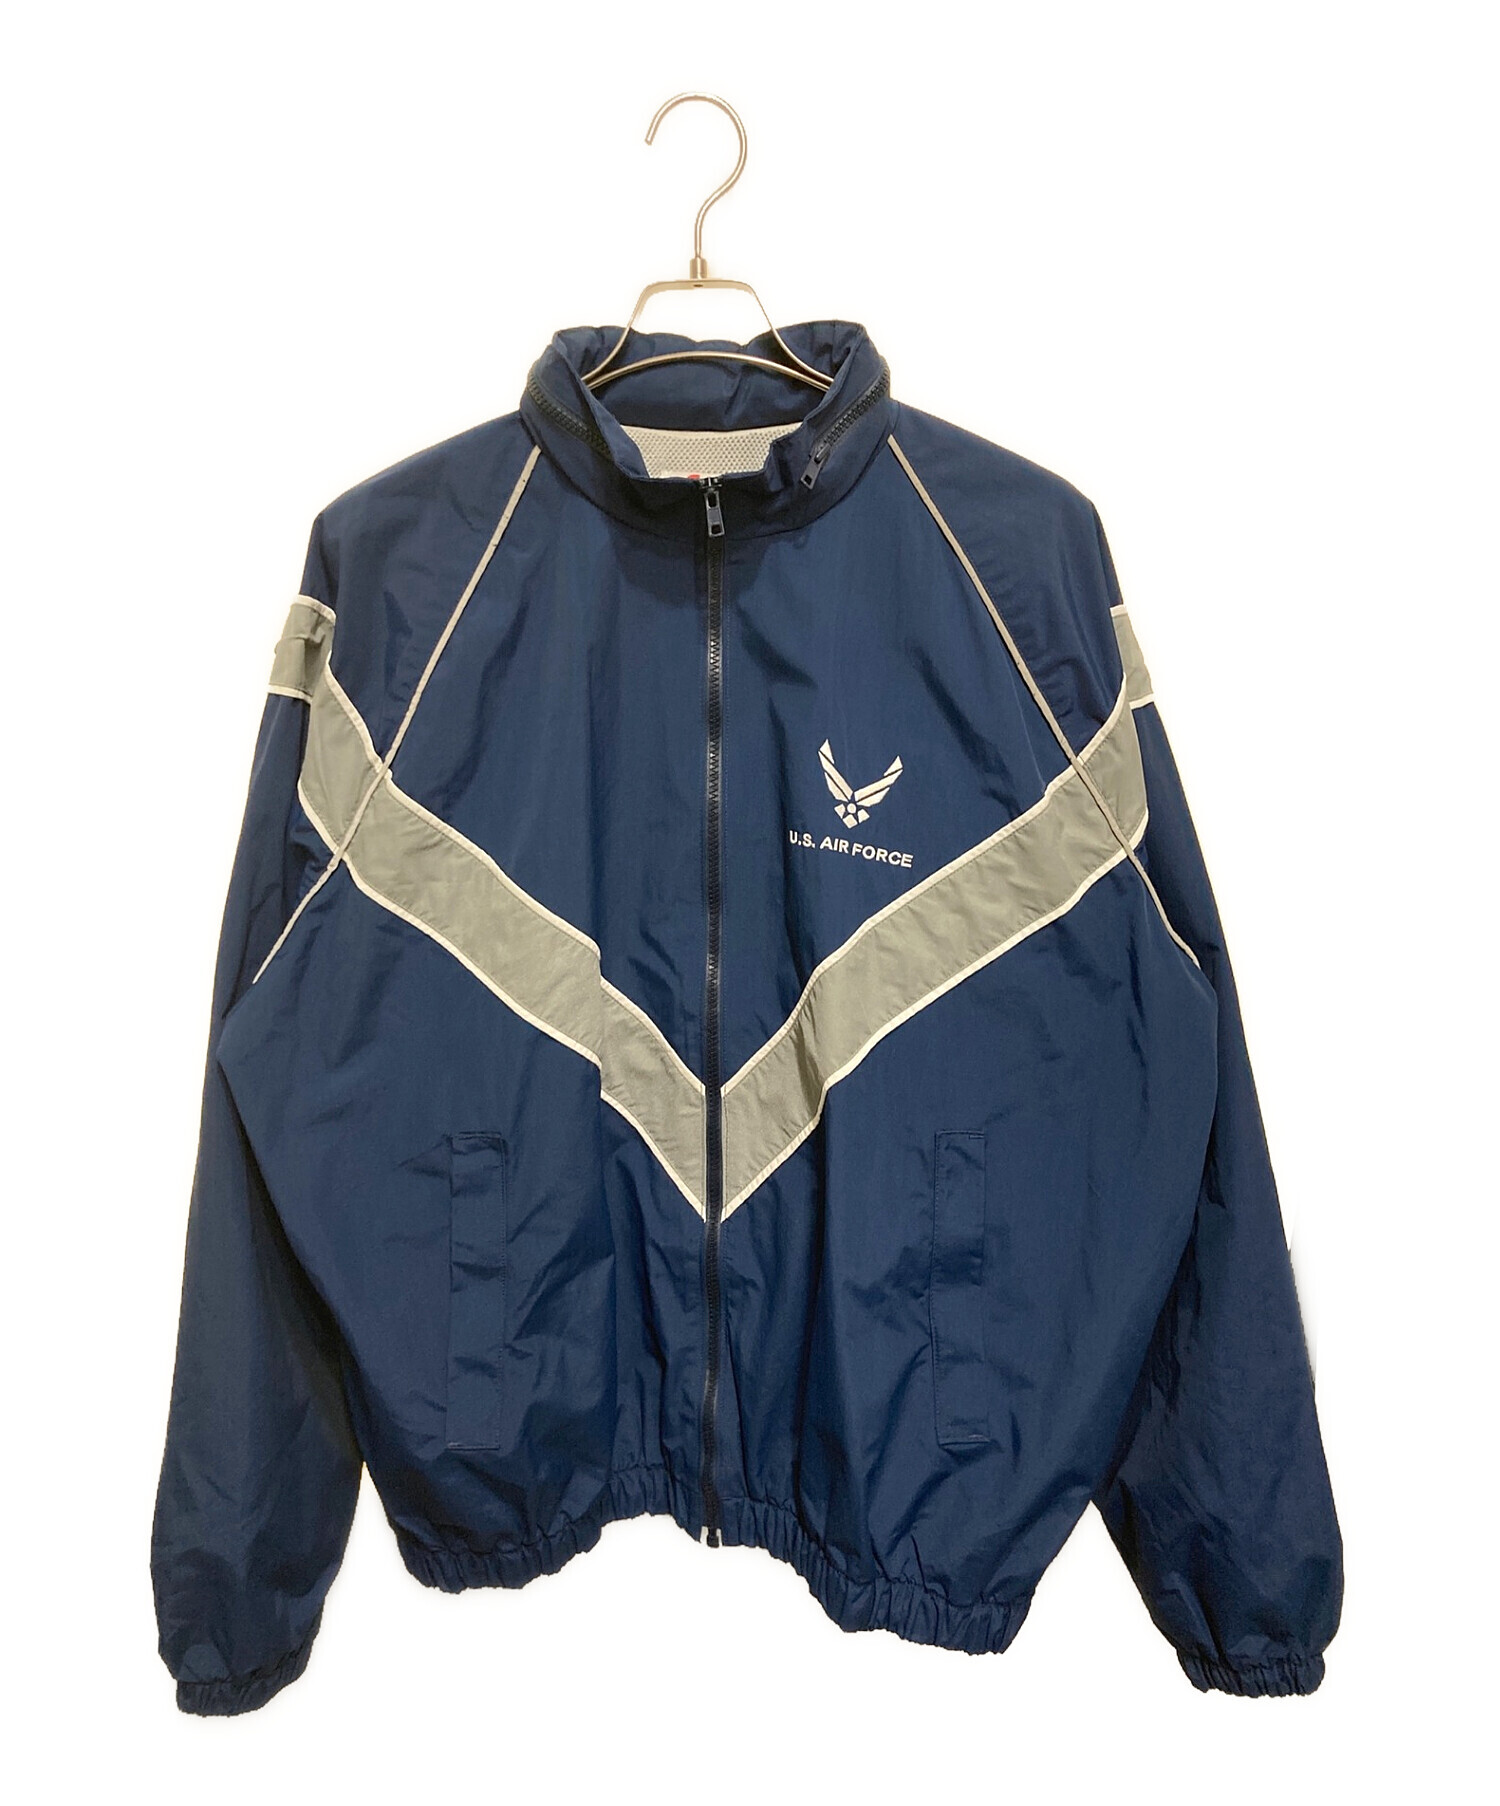 US.AIR FORCE PTU (ユーエスエアフォース) ナイロントレーニングジャケット ブルー サイズ:L